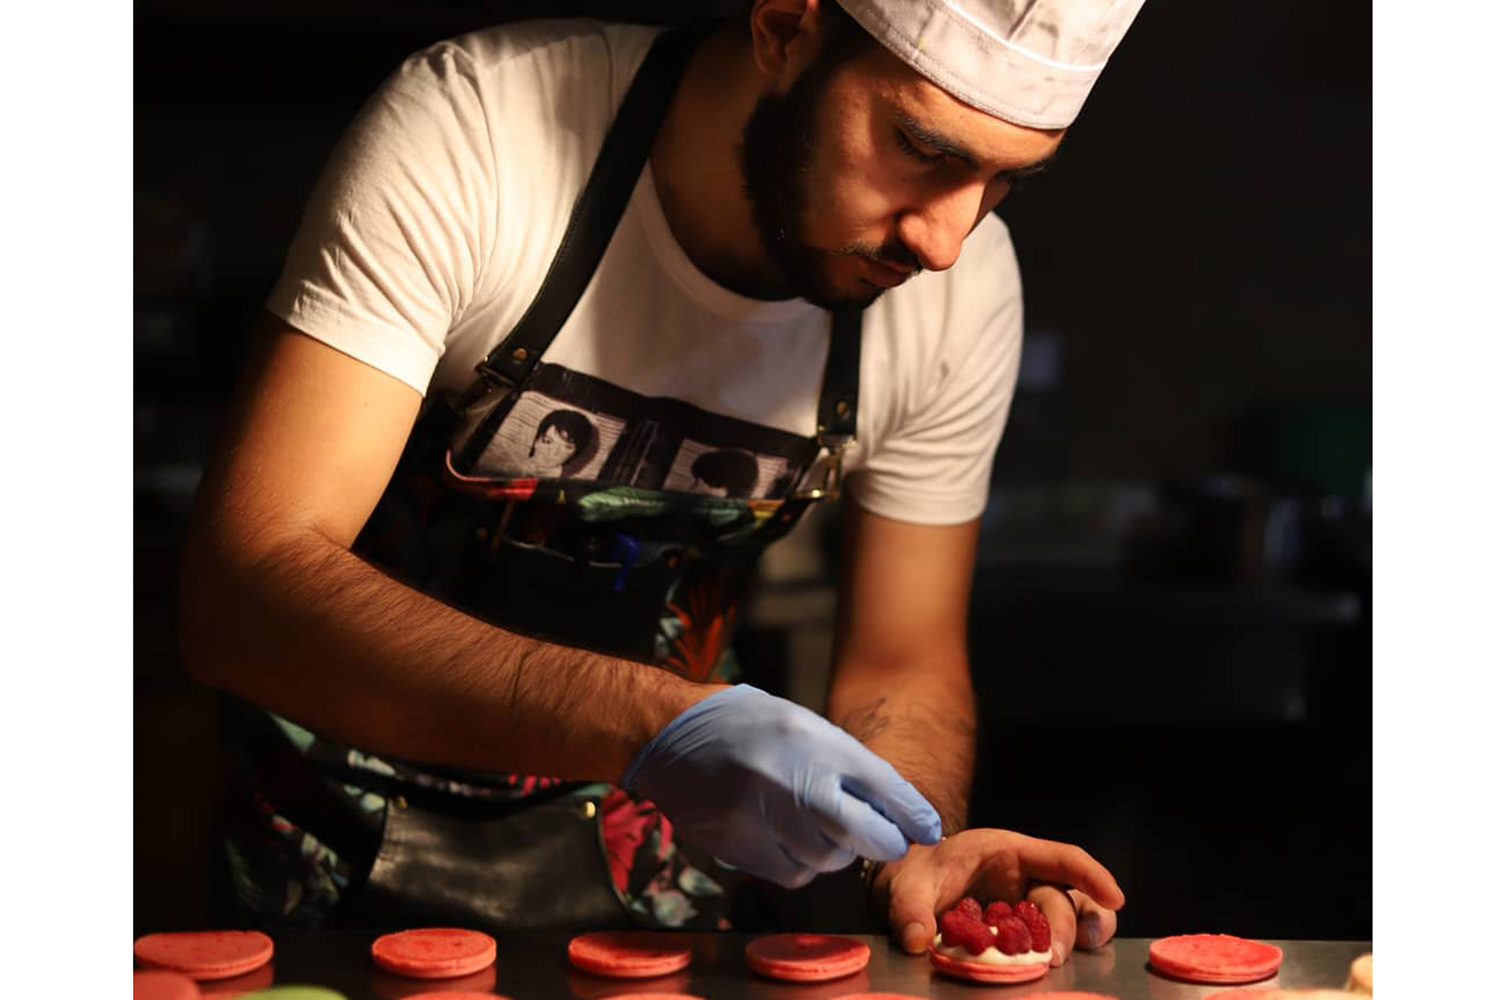 Հայ խոհարարը դարձել է ռեստորանային սպորտի աշխարհի փոխչեմպիոն